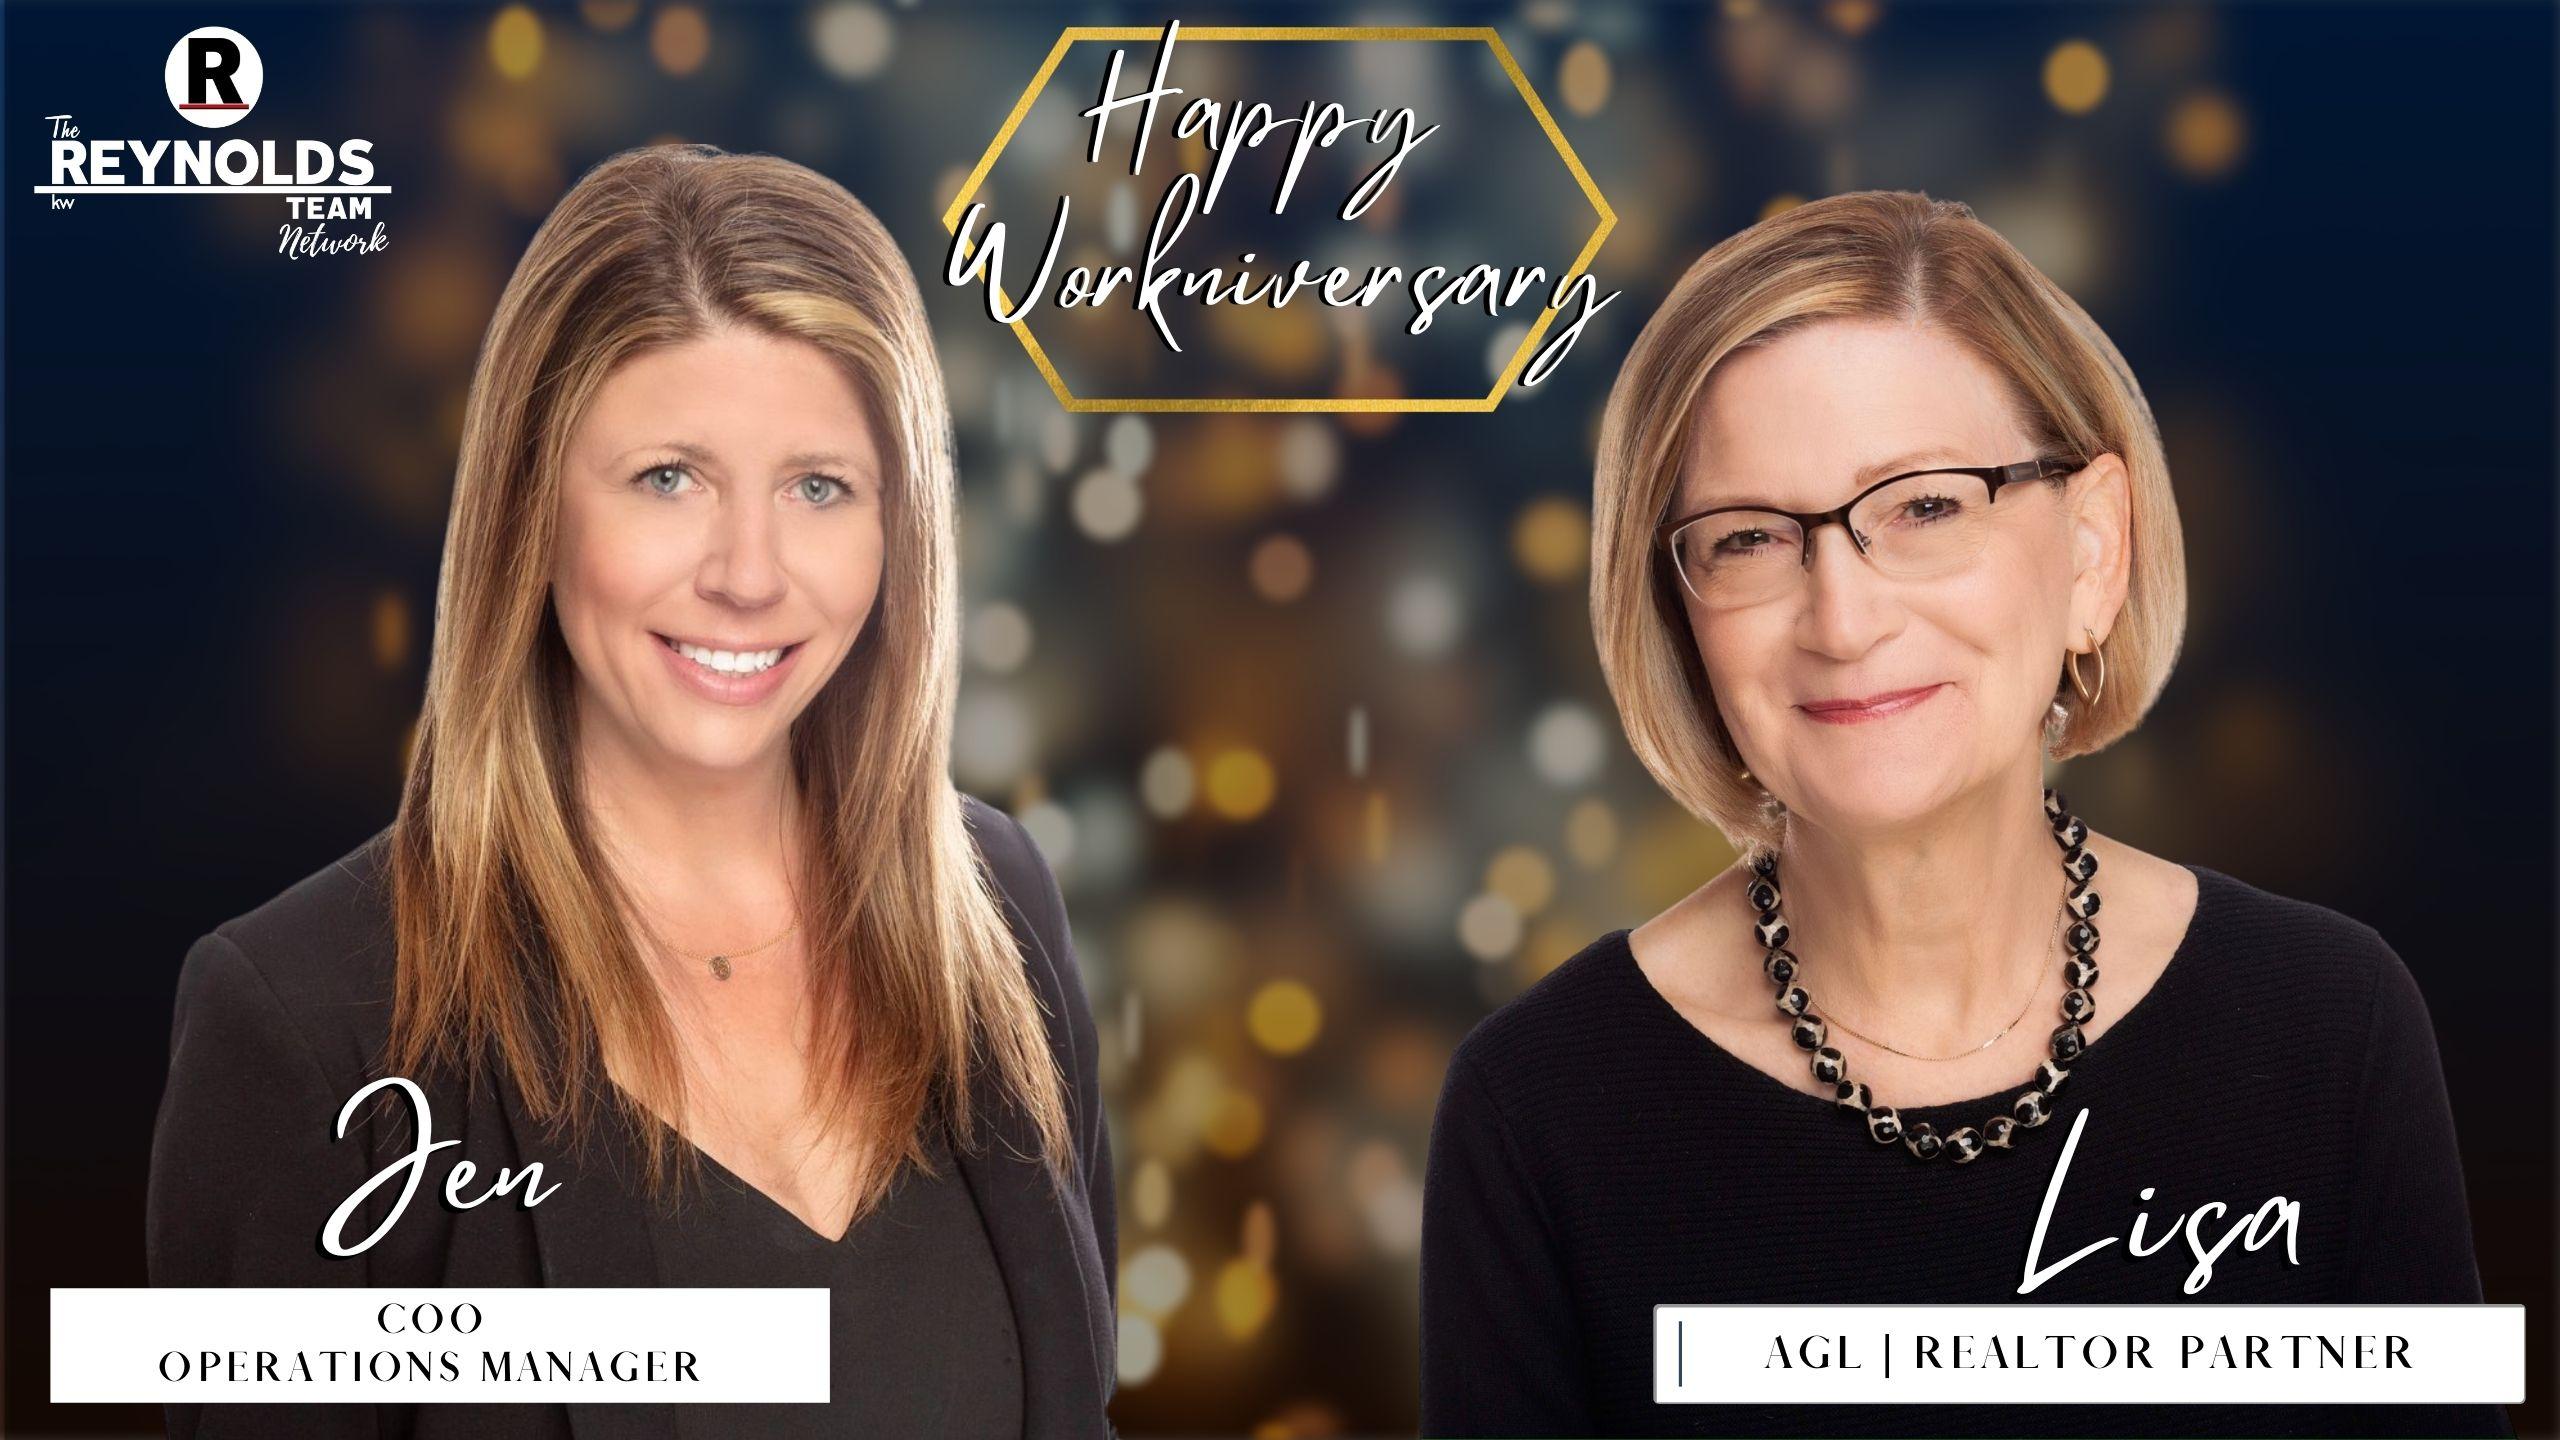 Happy Workniversary, Jen and Lisa!